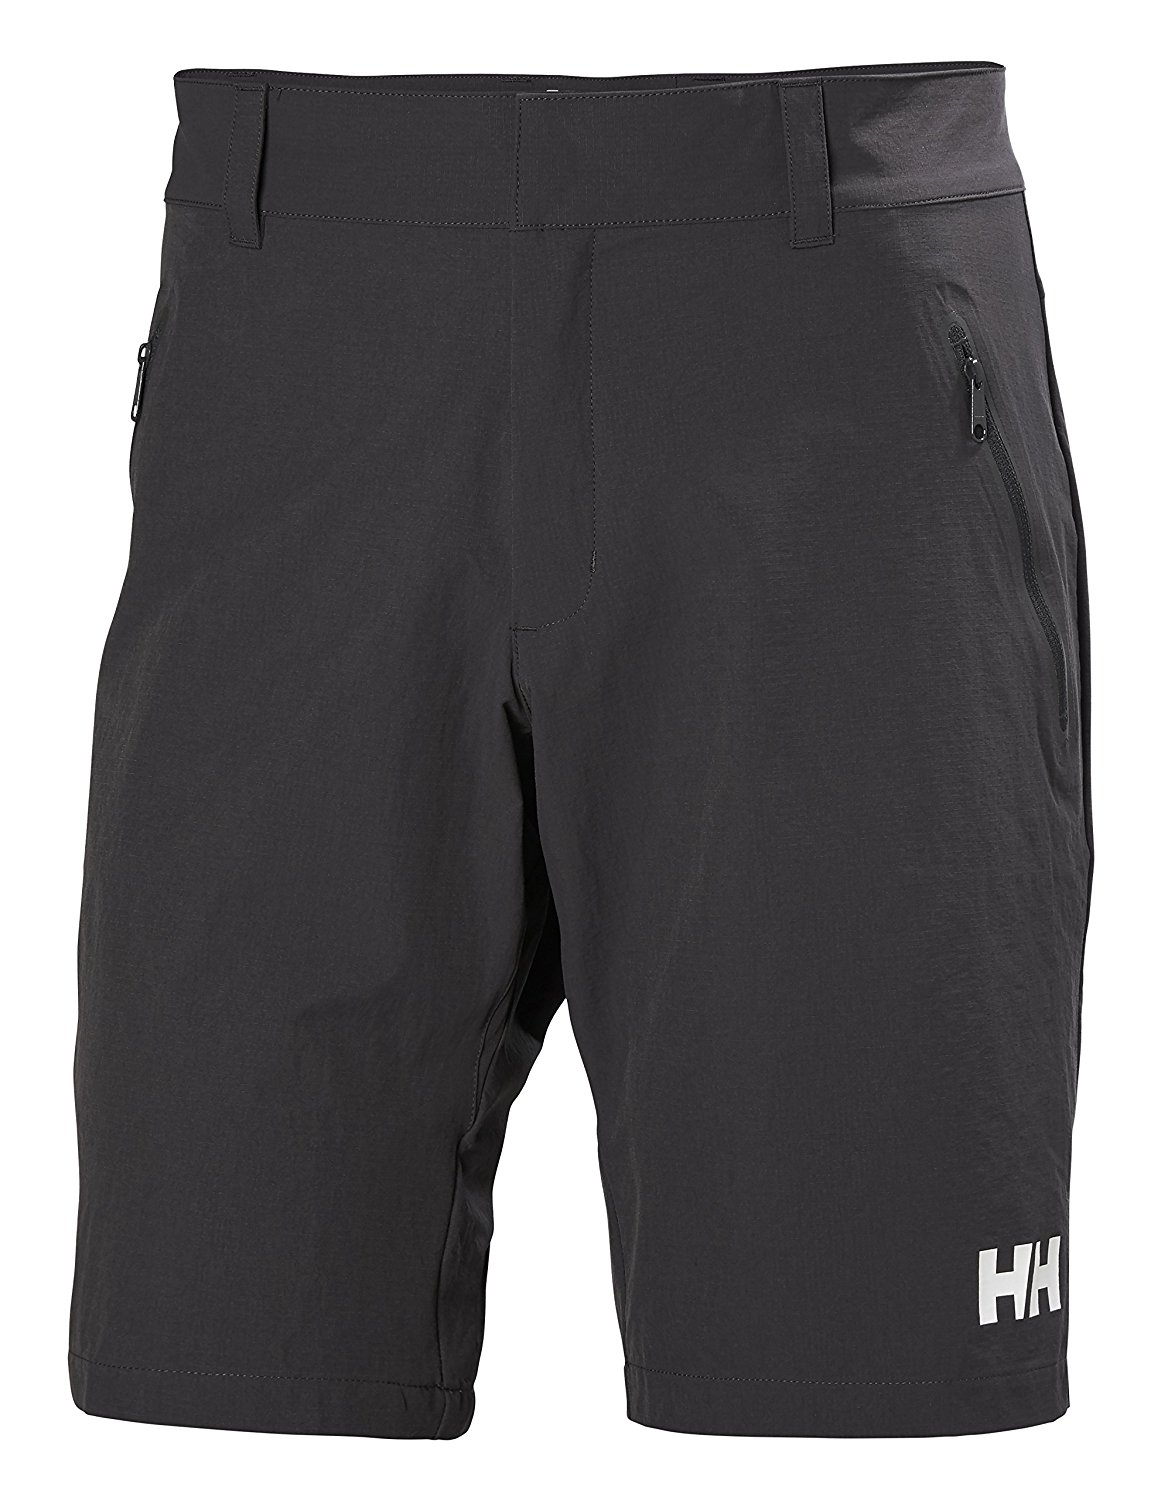 Helly Hansen Men's Crewline Quick Dry Shorts